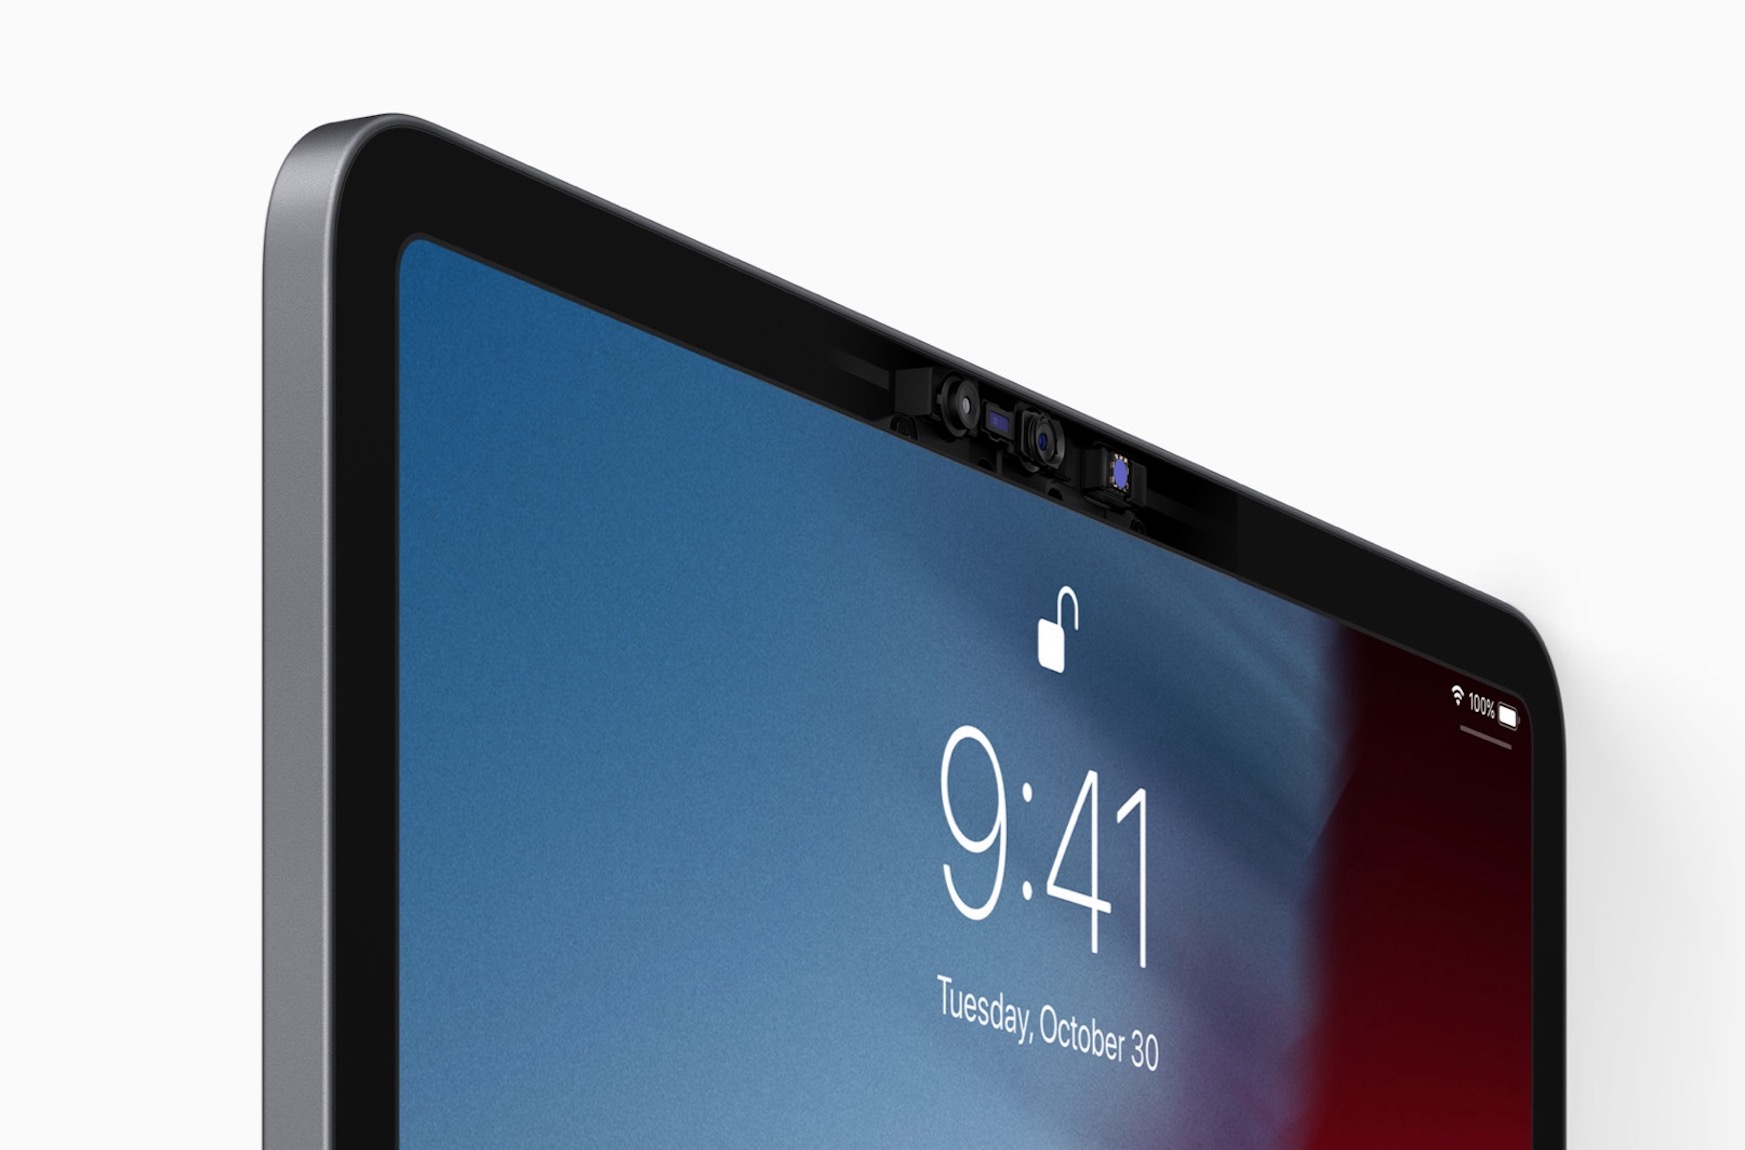 iMac 2020-k iPad Pro bezalako markoak izango ditu. Non dago Erosi Orain botoia?